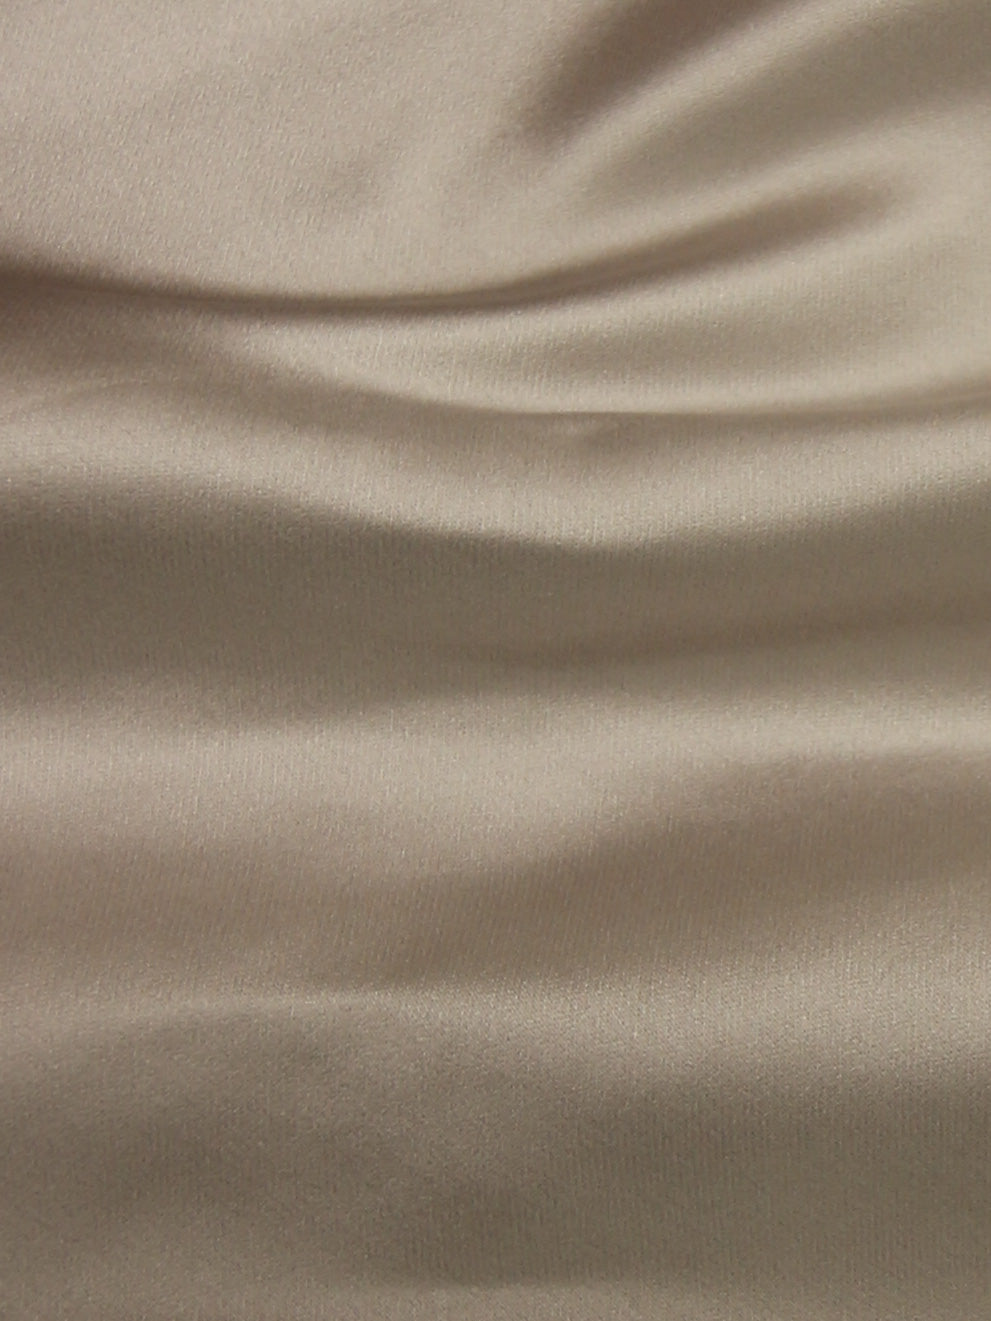 Polyester Luxury Duchess Satin (148cm/58) - Supreme